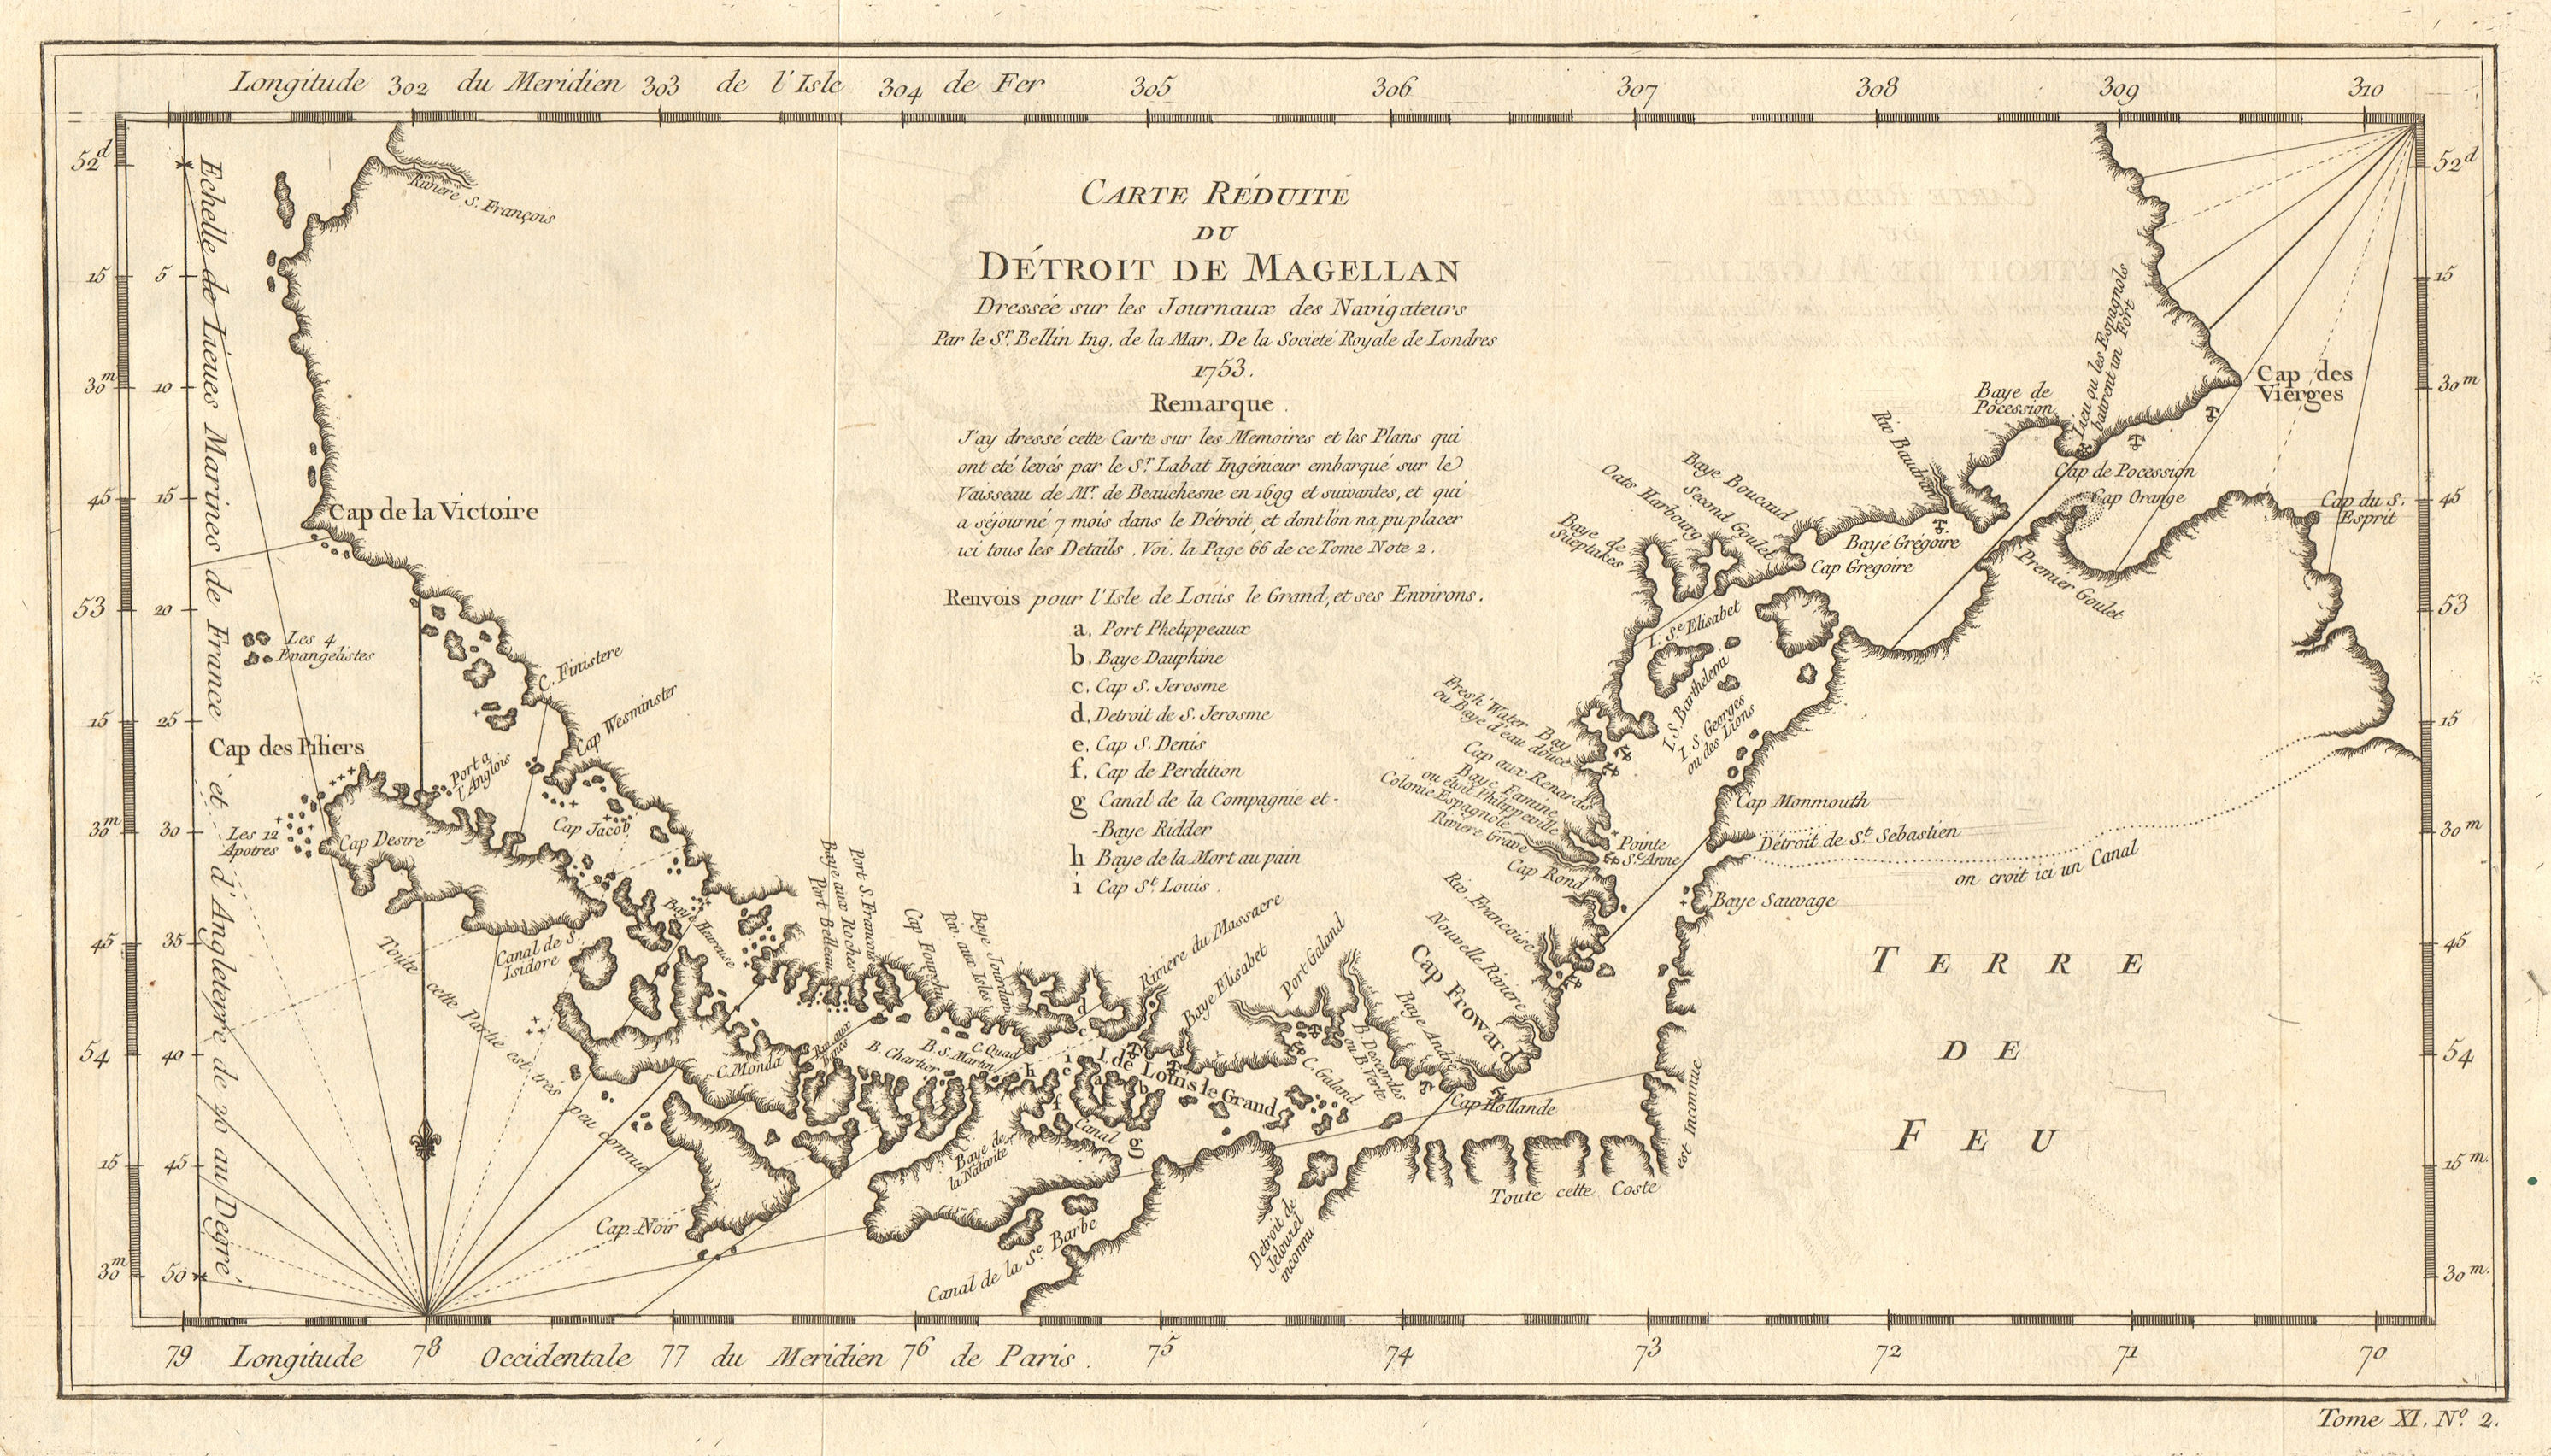 Associate Product 'Carte réduite du Détroit de Magellan' Strait, Chile. BELLIN 1753 old map